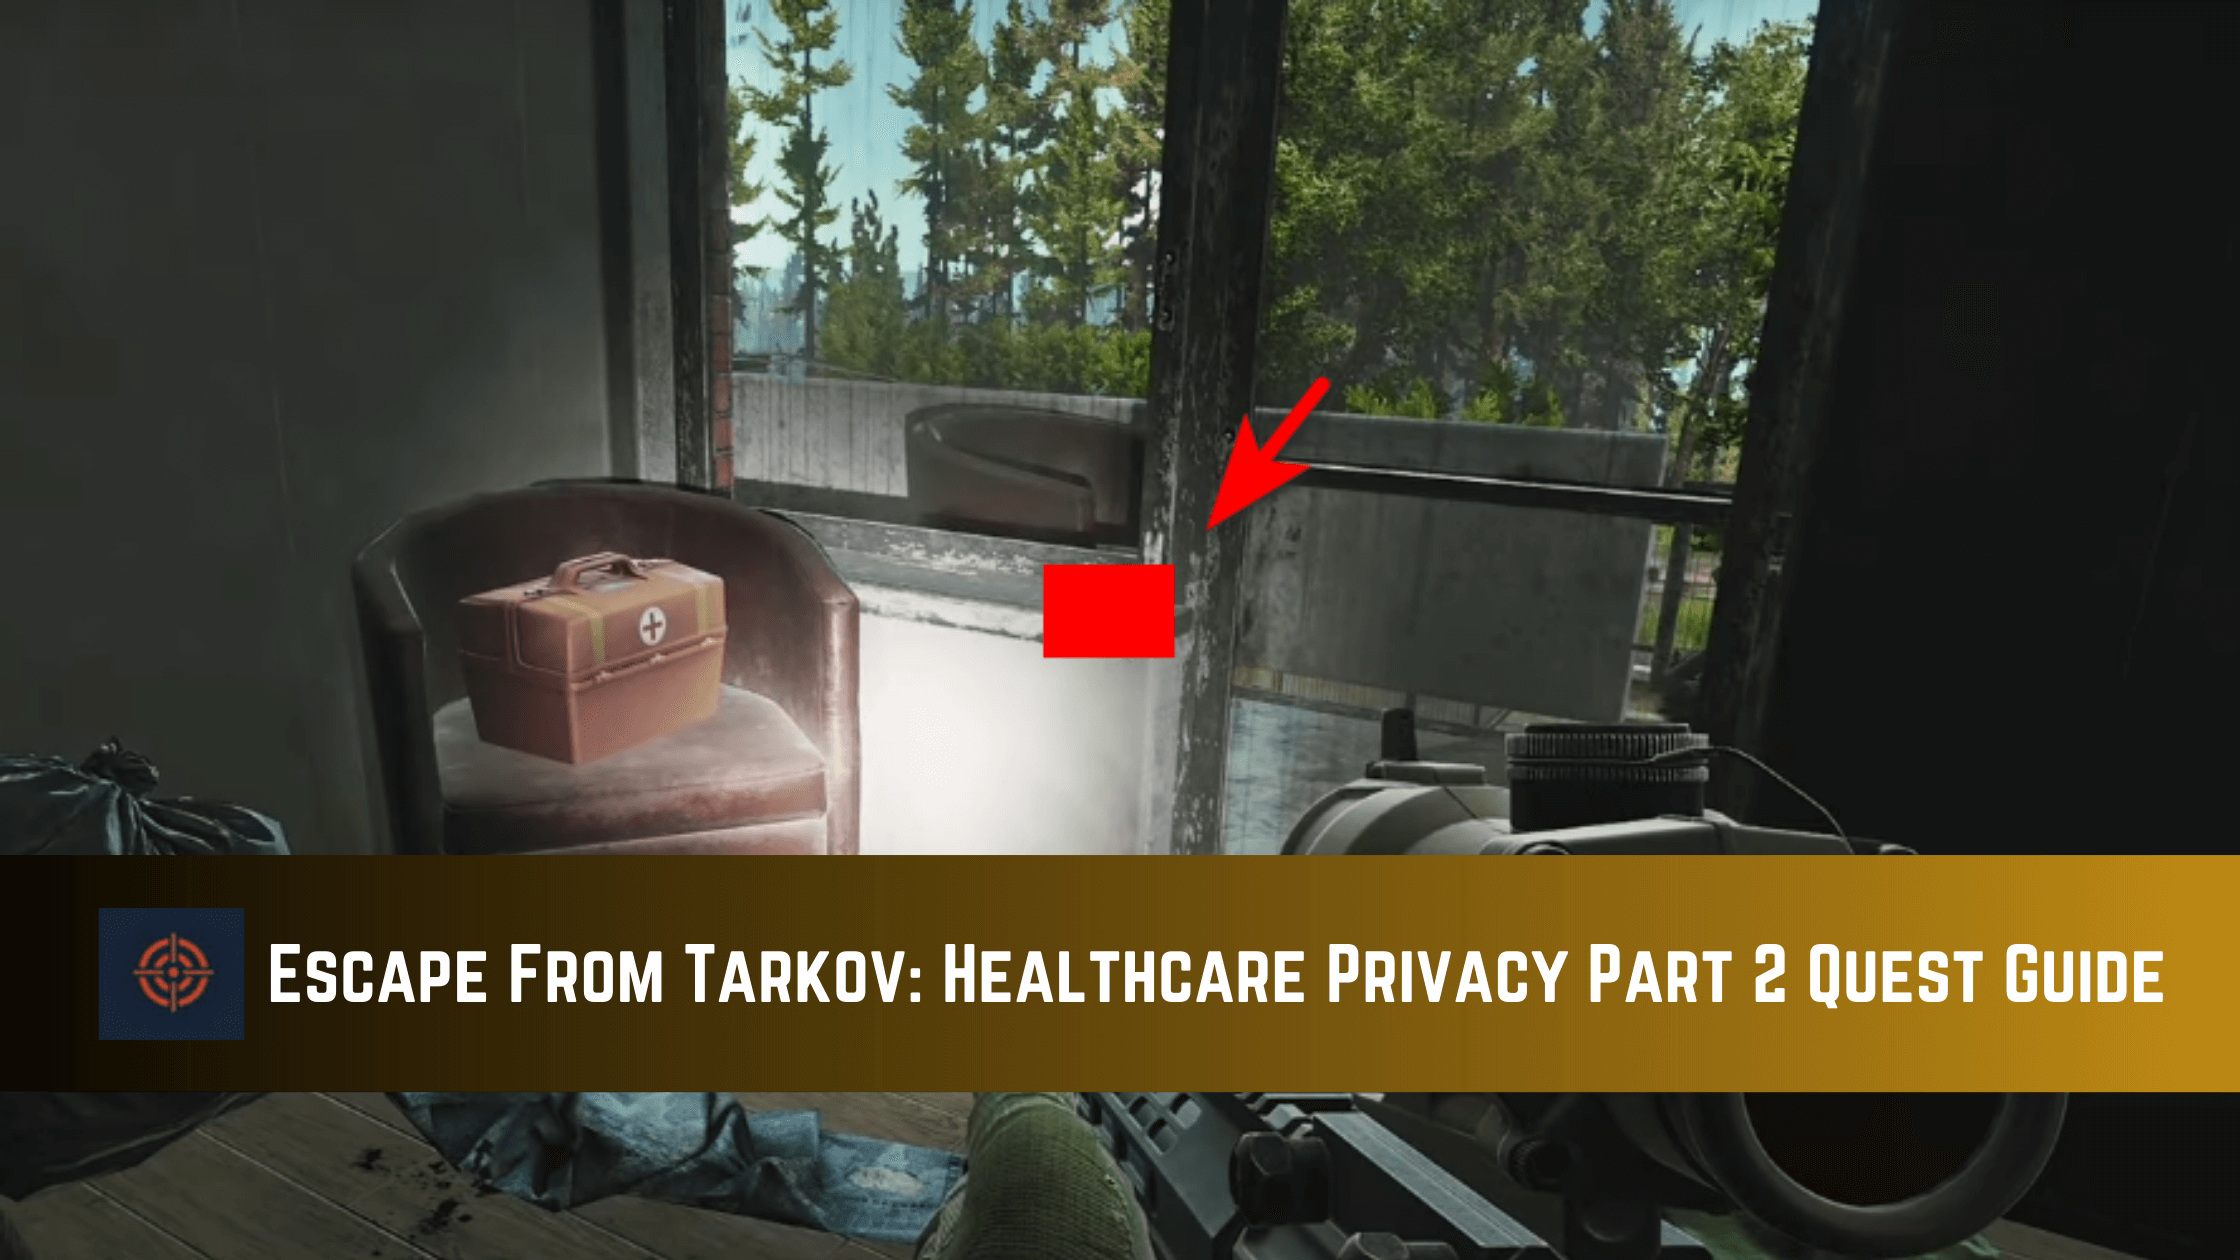 Escape From Tarkov Healthcare Privacy Part 2 Quest Guide